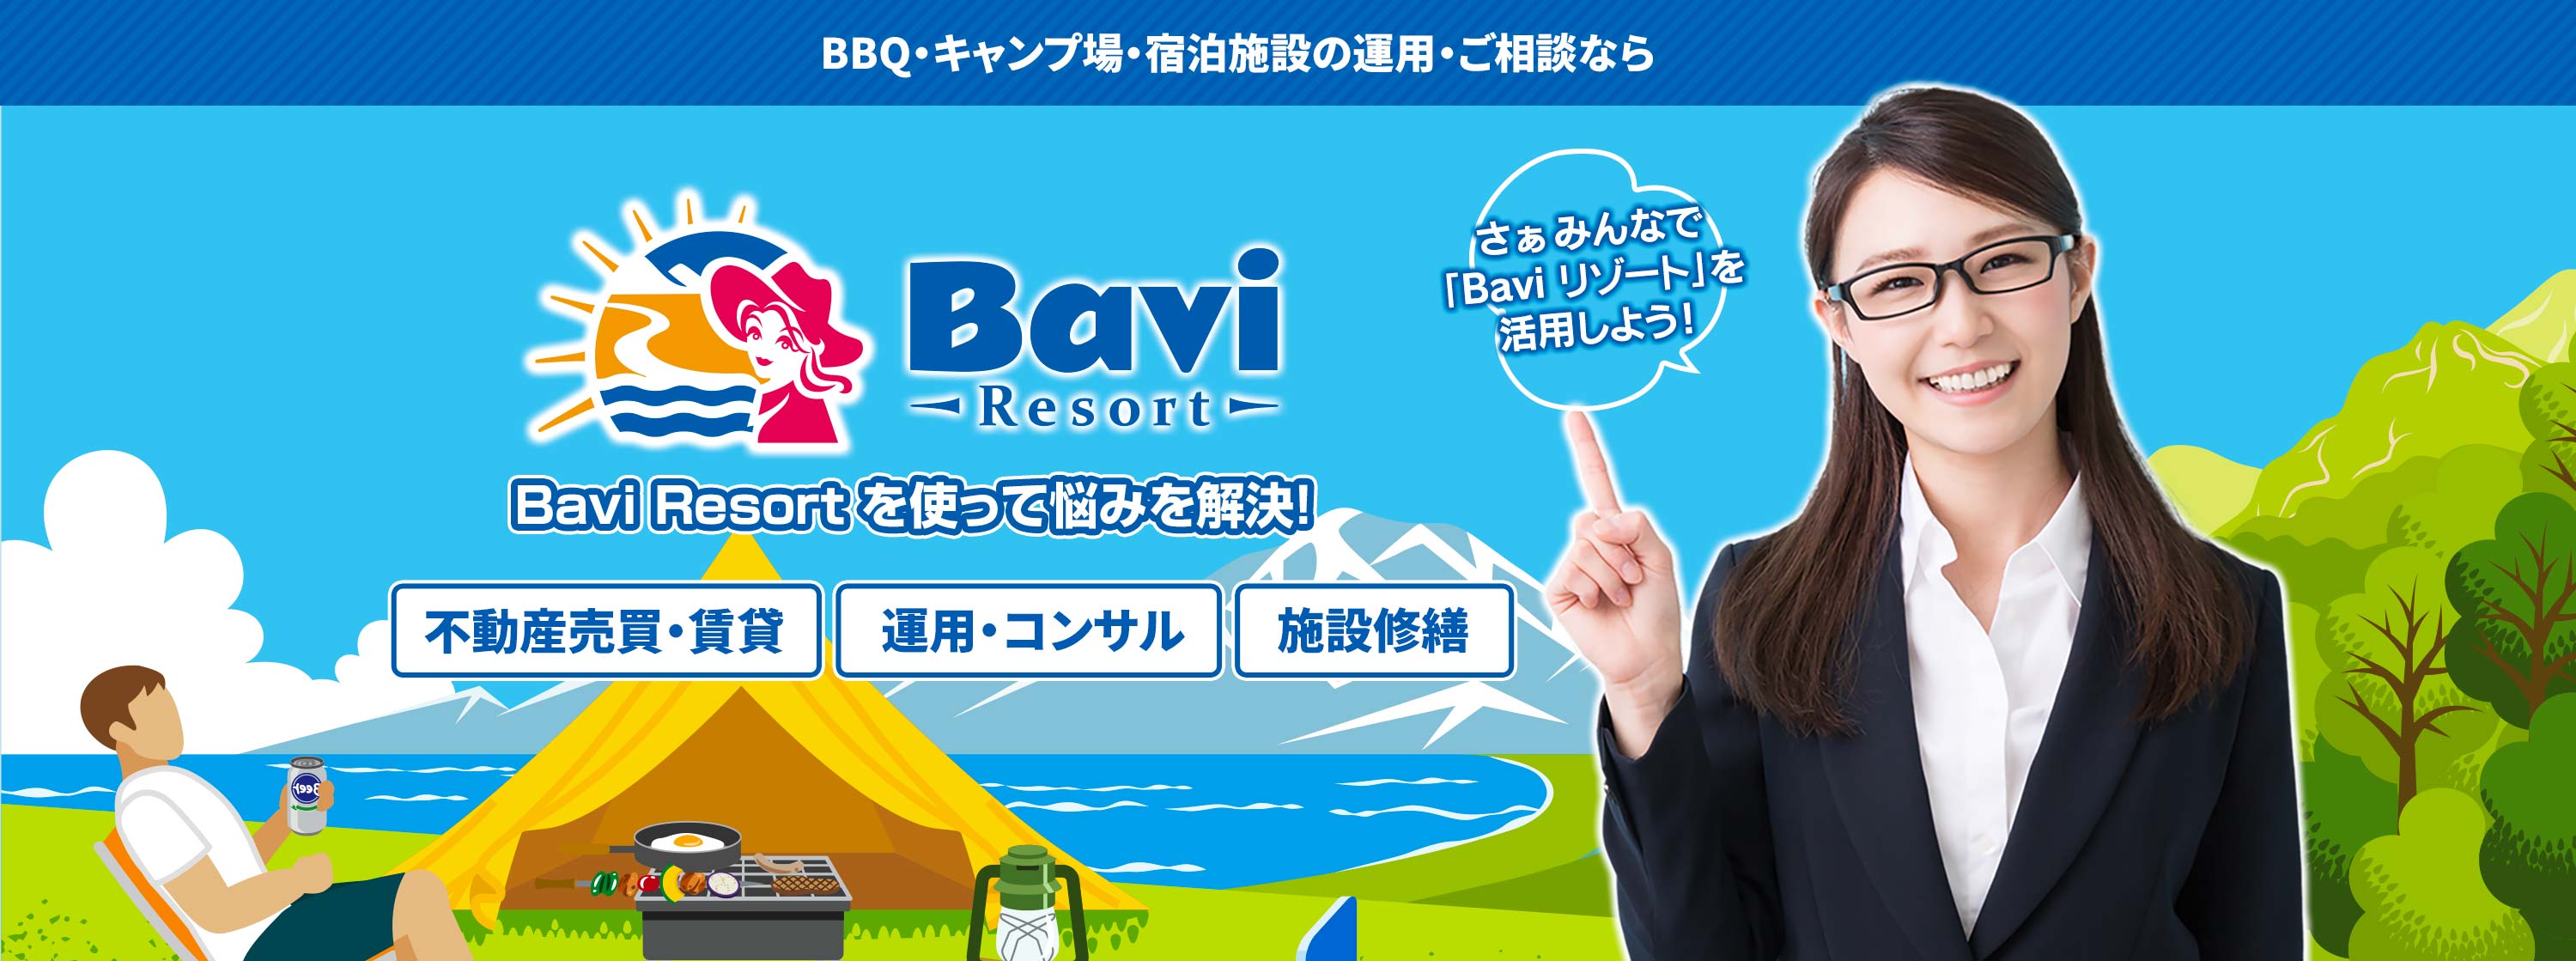 さぁみんなで Bavi Resort を活用しよう! 経営者様 投資家様 土地オーナー様 施設運営希望者様 事業コラボ希望者様